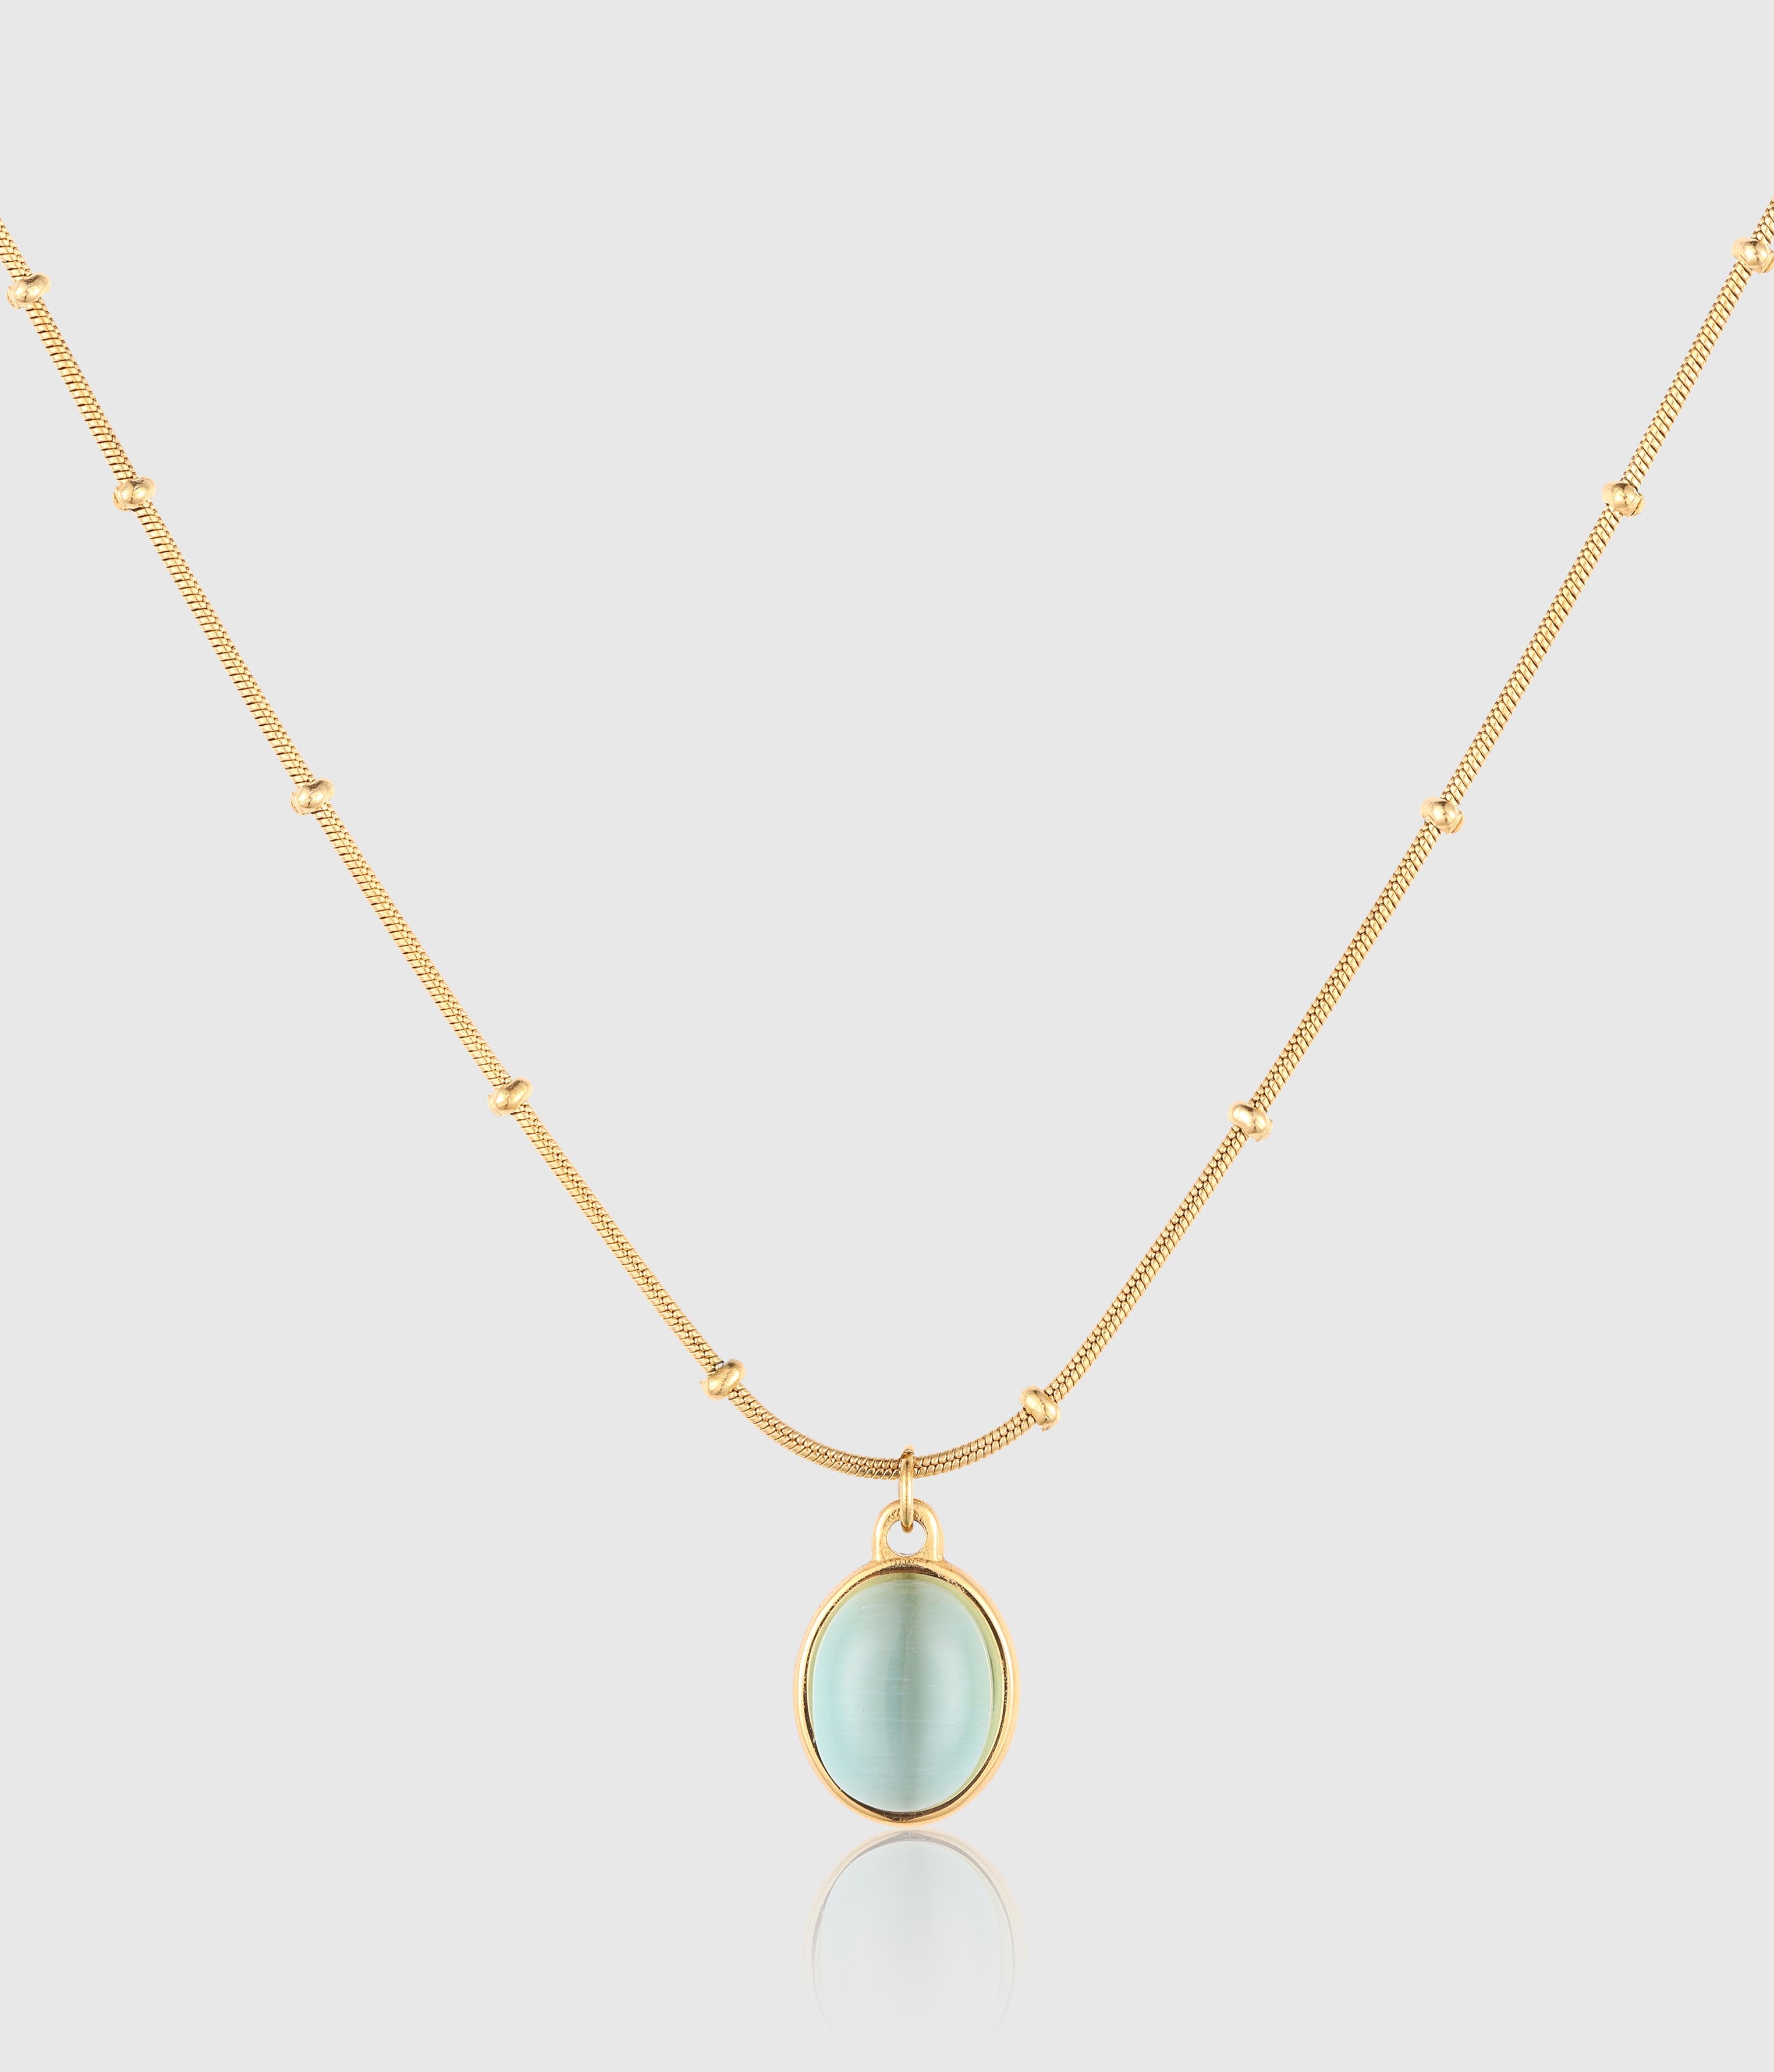 Gold Aquamarine Necklace – tooriginal